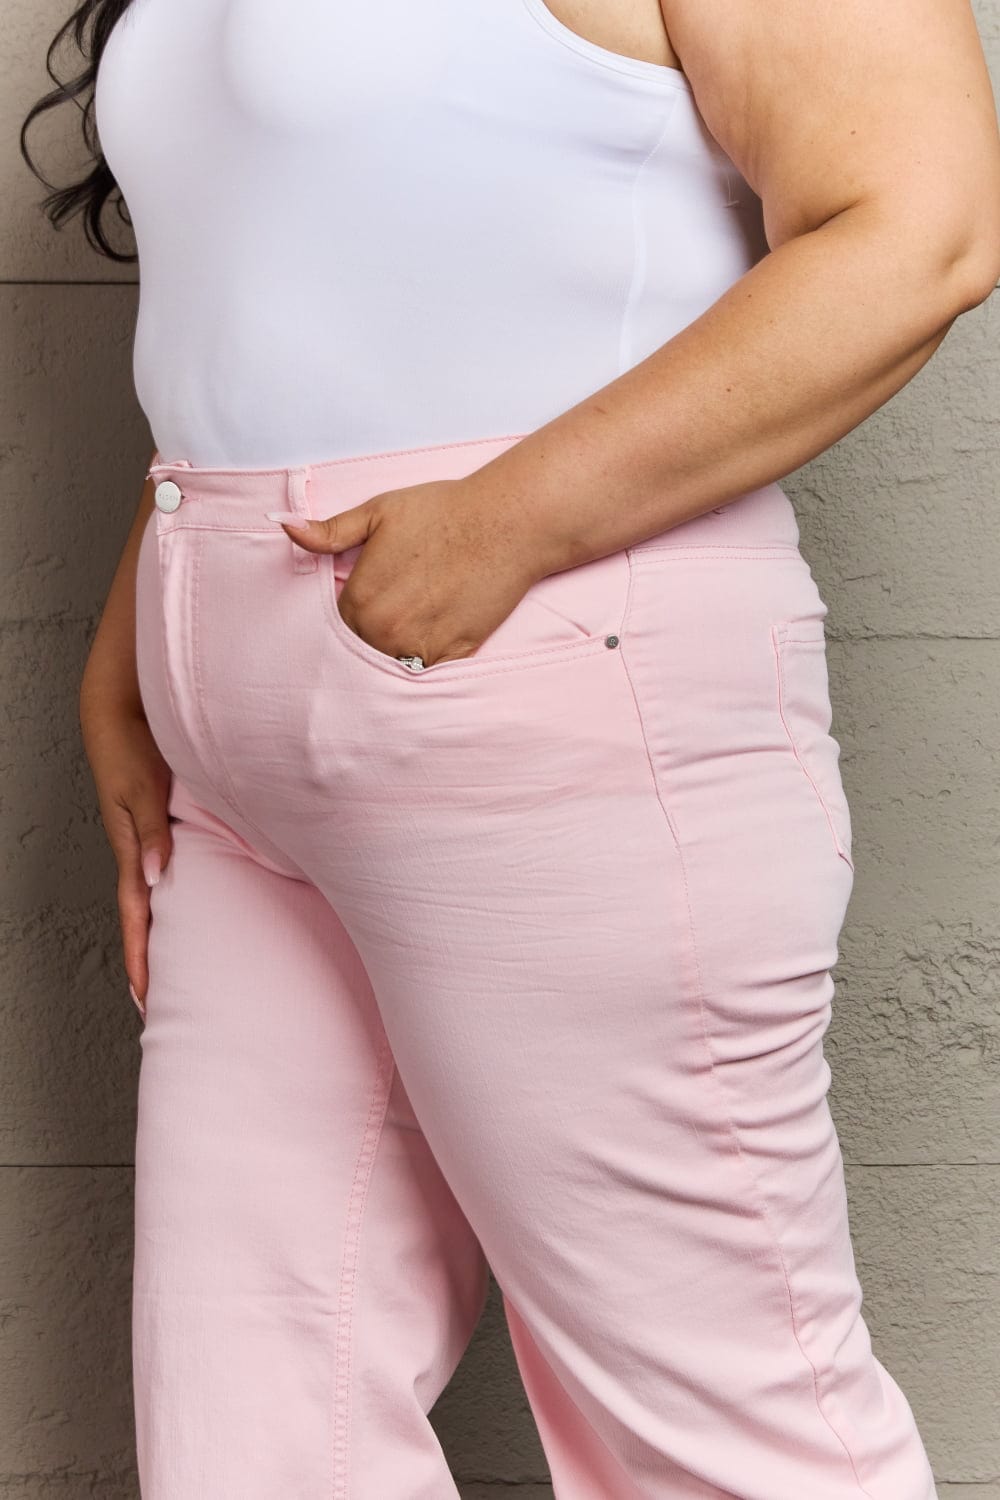 Full Size High Waist Wide Leg Jeans in Light Pink - Body By J'ne